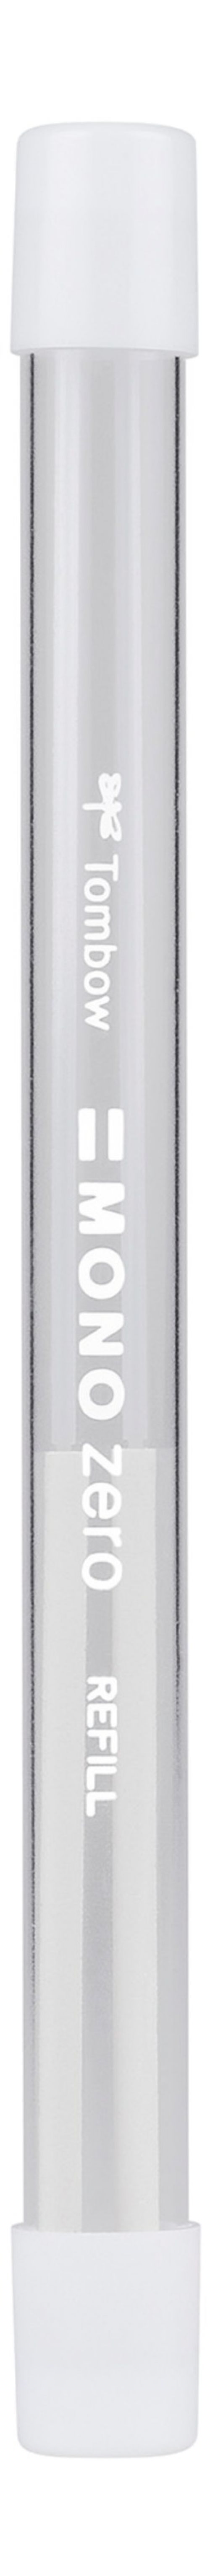 Tombow MONO Zero Refill for Round Tip Eraser White - ER-KUR